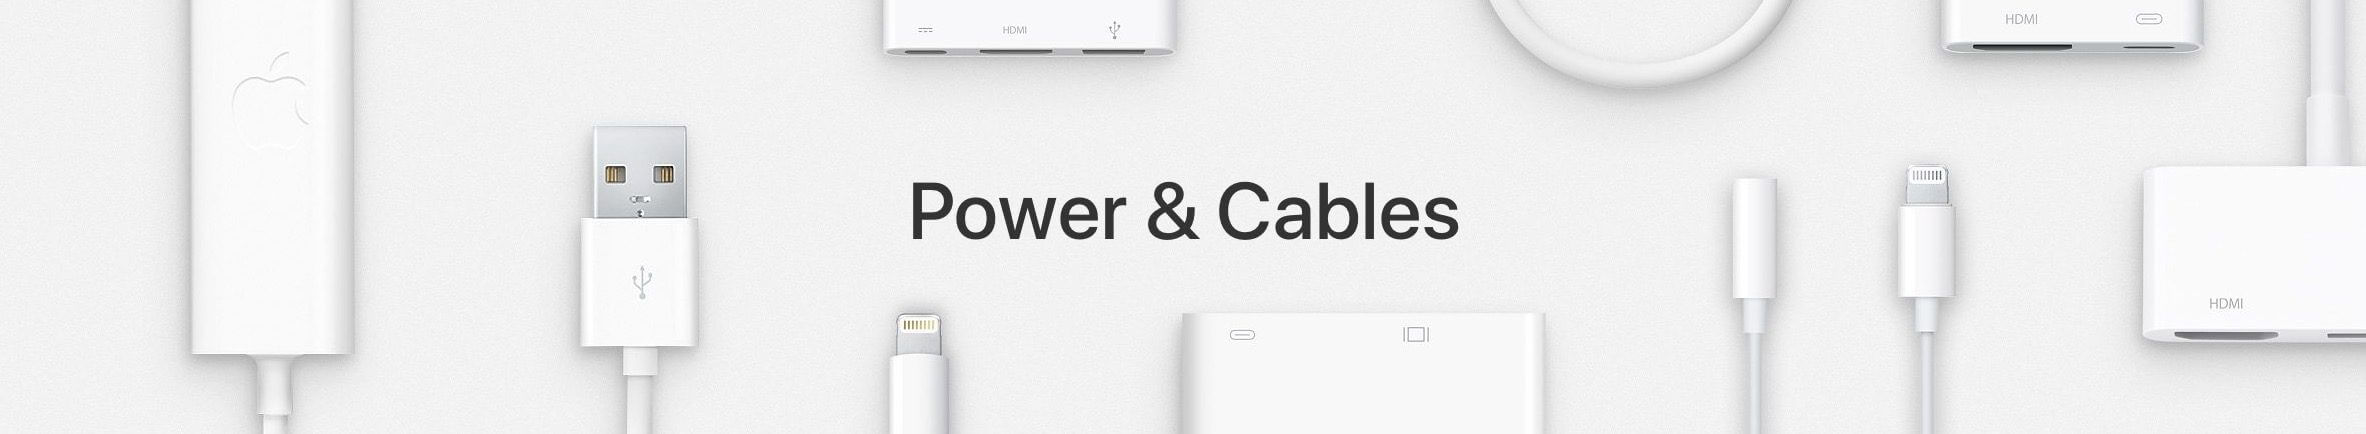 Быстрая зарядка iPhone и iPad с помощью зарядного устройства MacBook Pro?